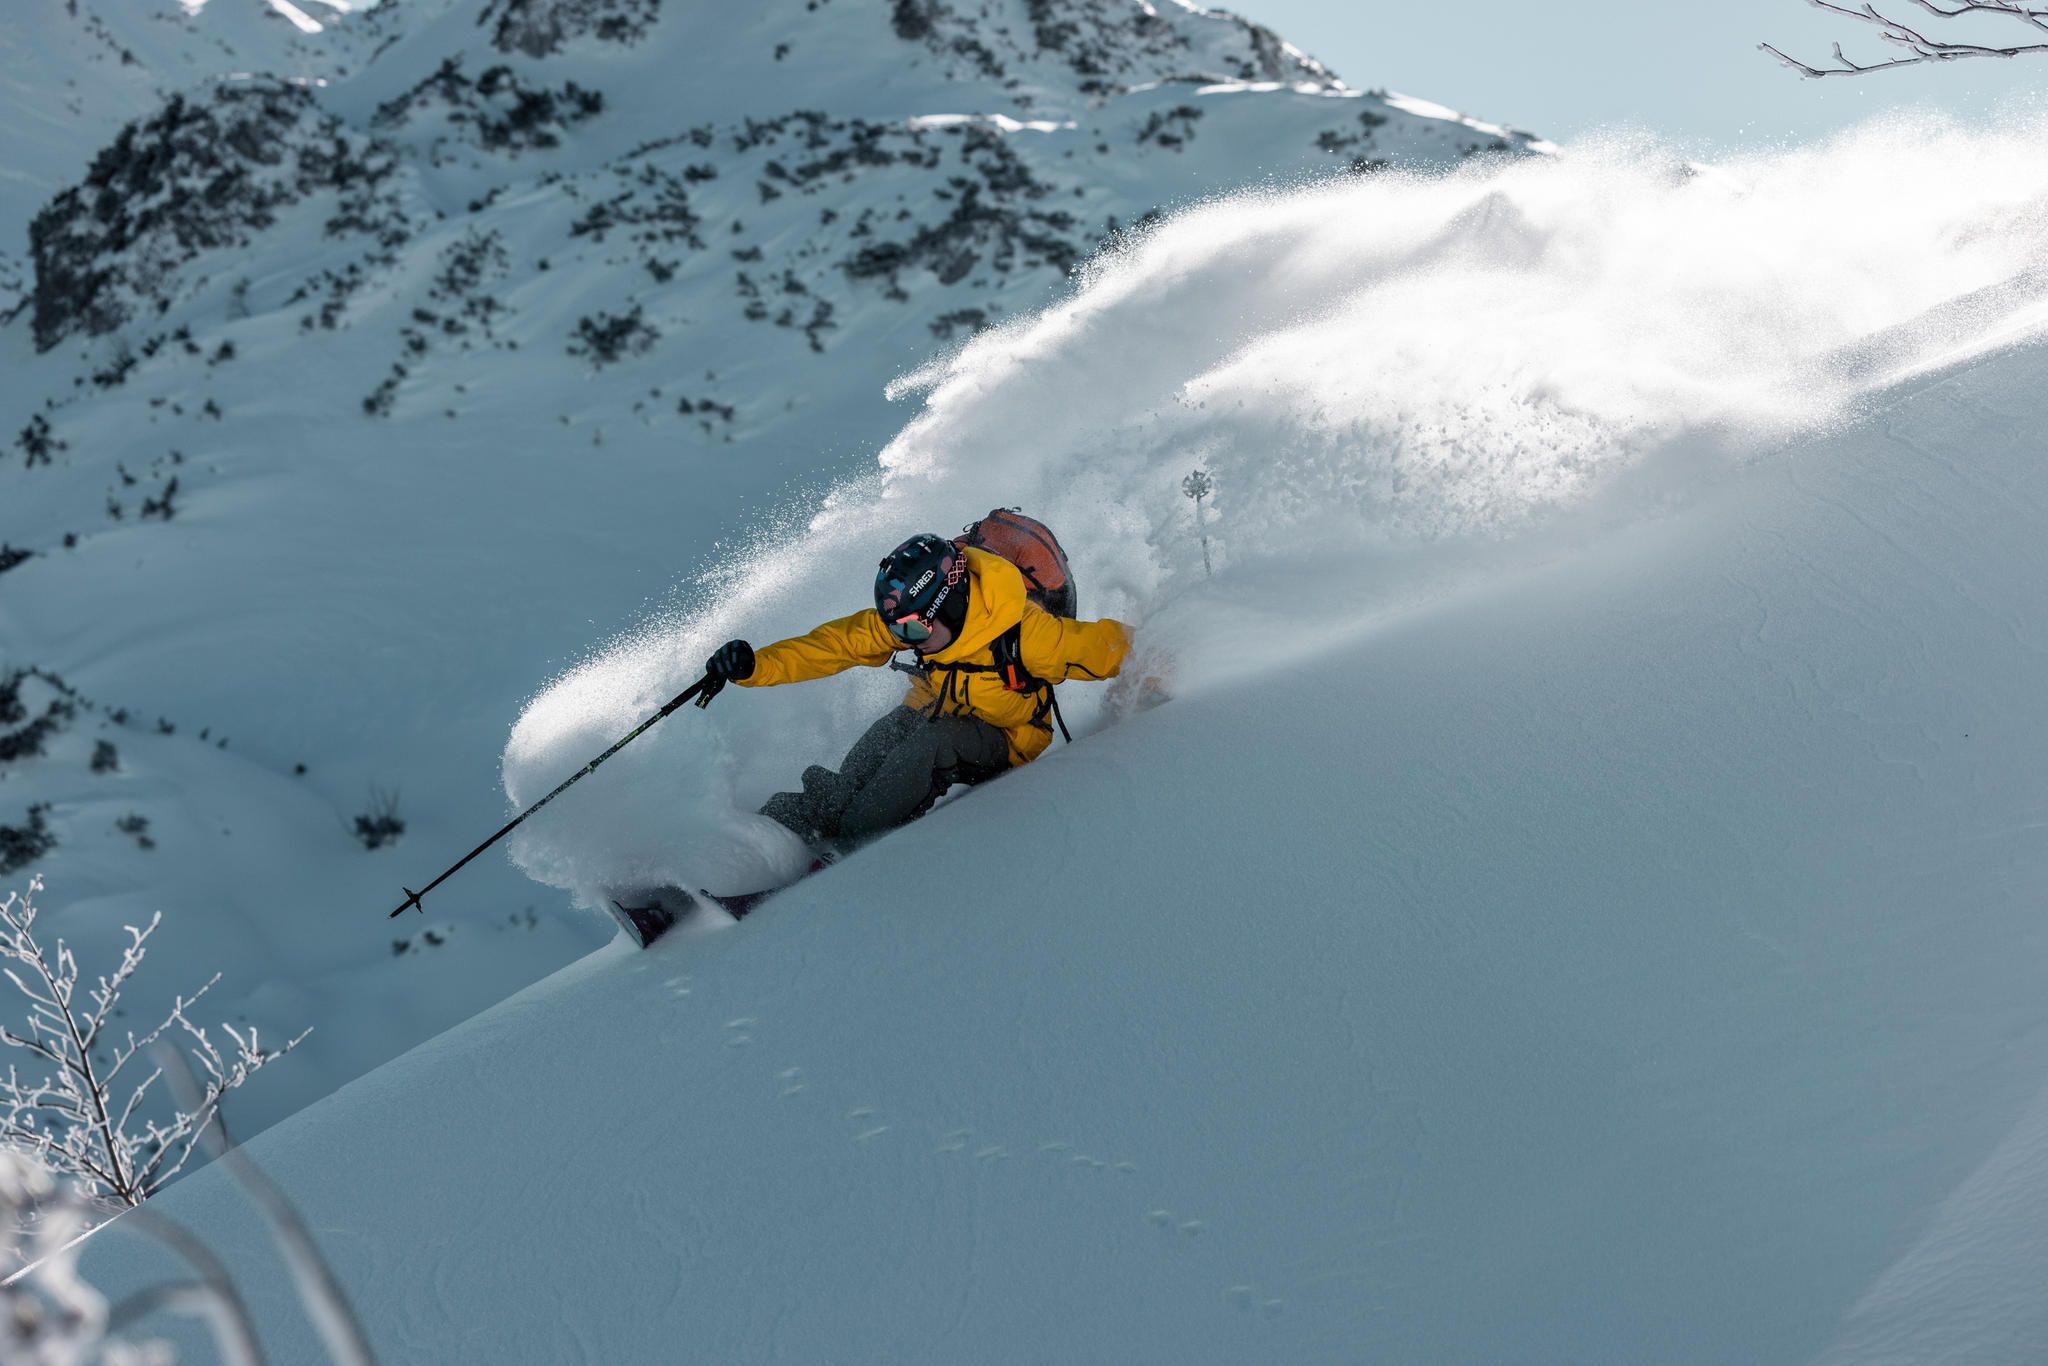 Ski und Snowboard: Die besten Tipps für einen sicheren Urlaub - IMTEST